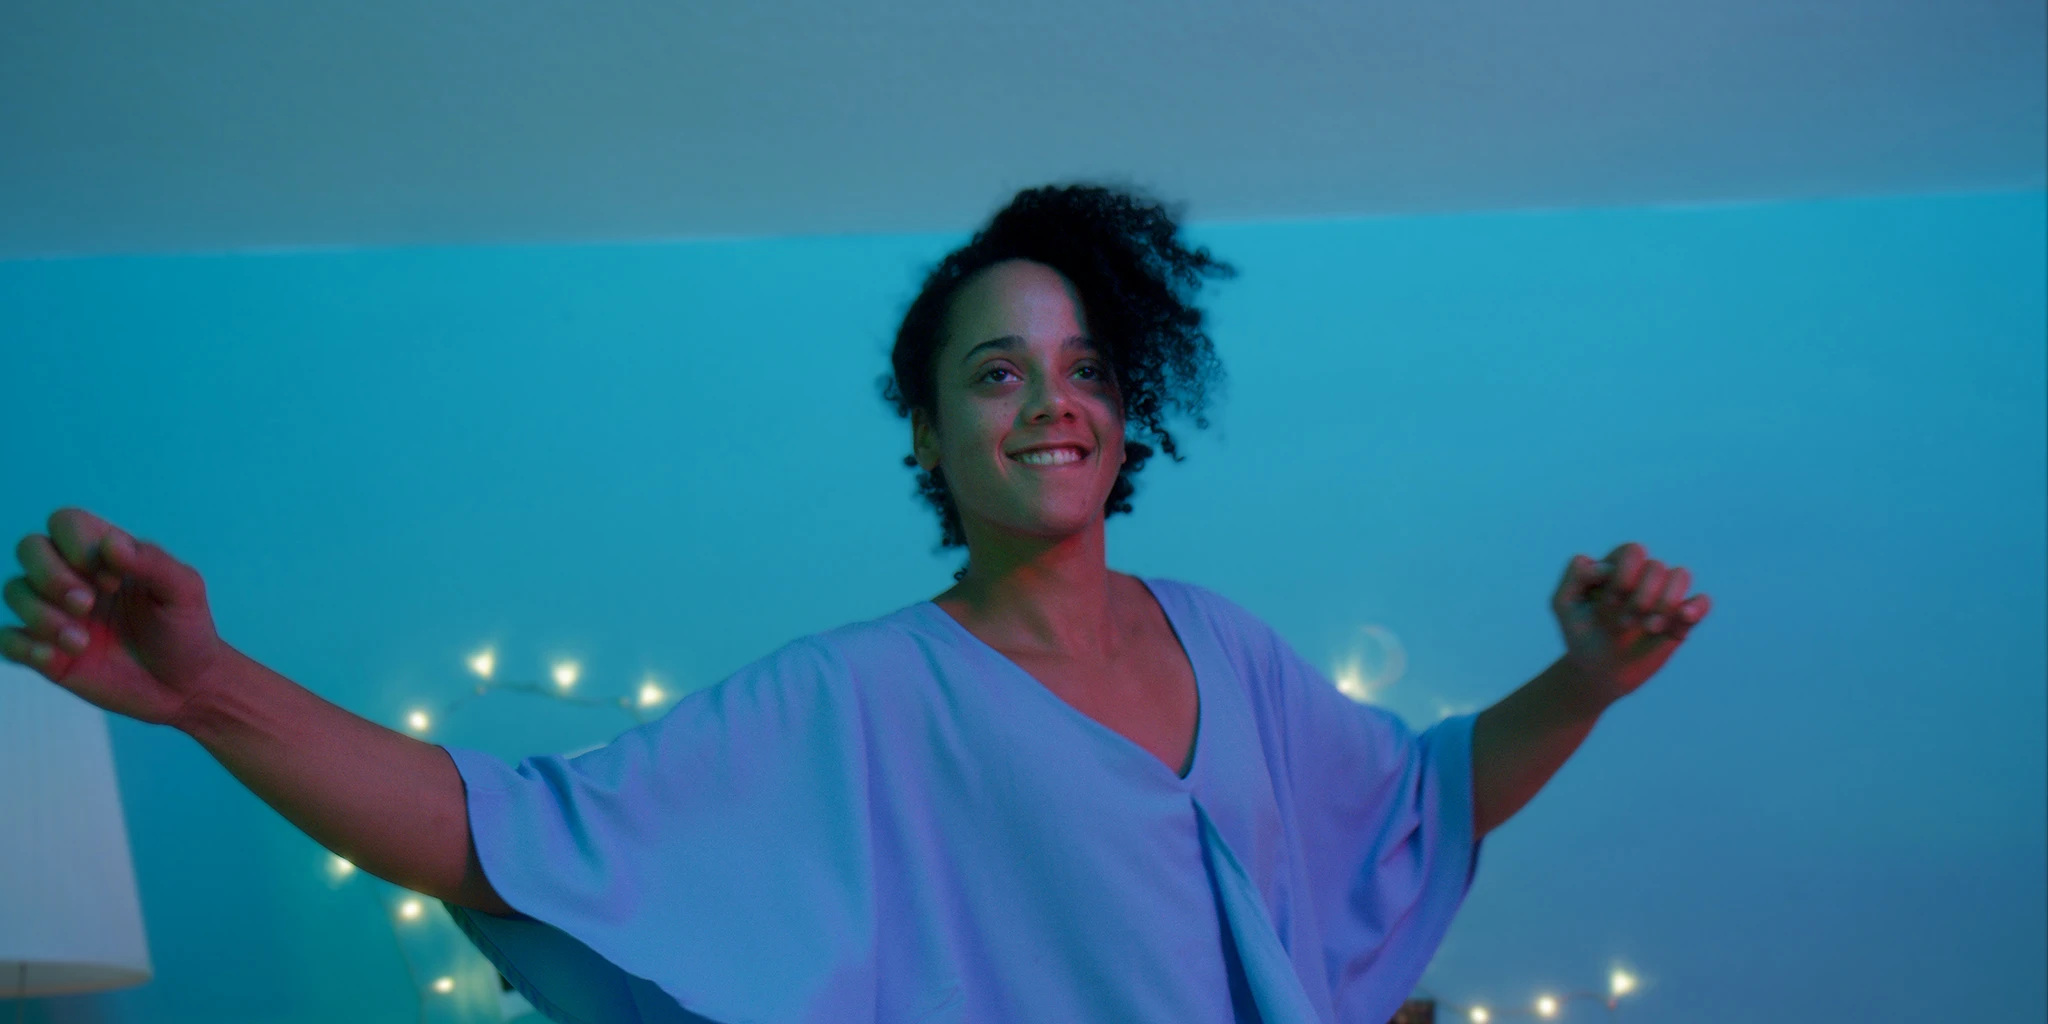 Eine junge Frau (Shari Asha Crosson) tanzt offen und ausgelassen vor eine blau-grünen Wand. Im Hintergrund ist eine Lichterkette.